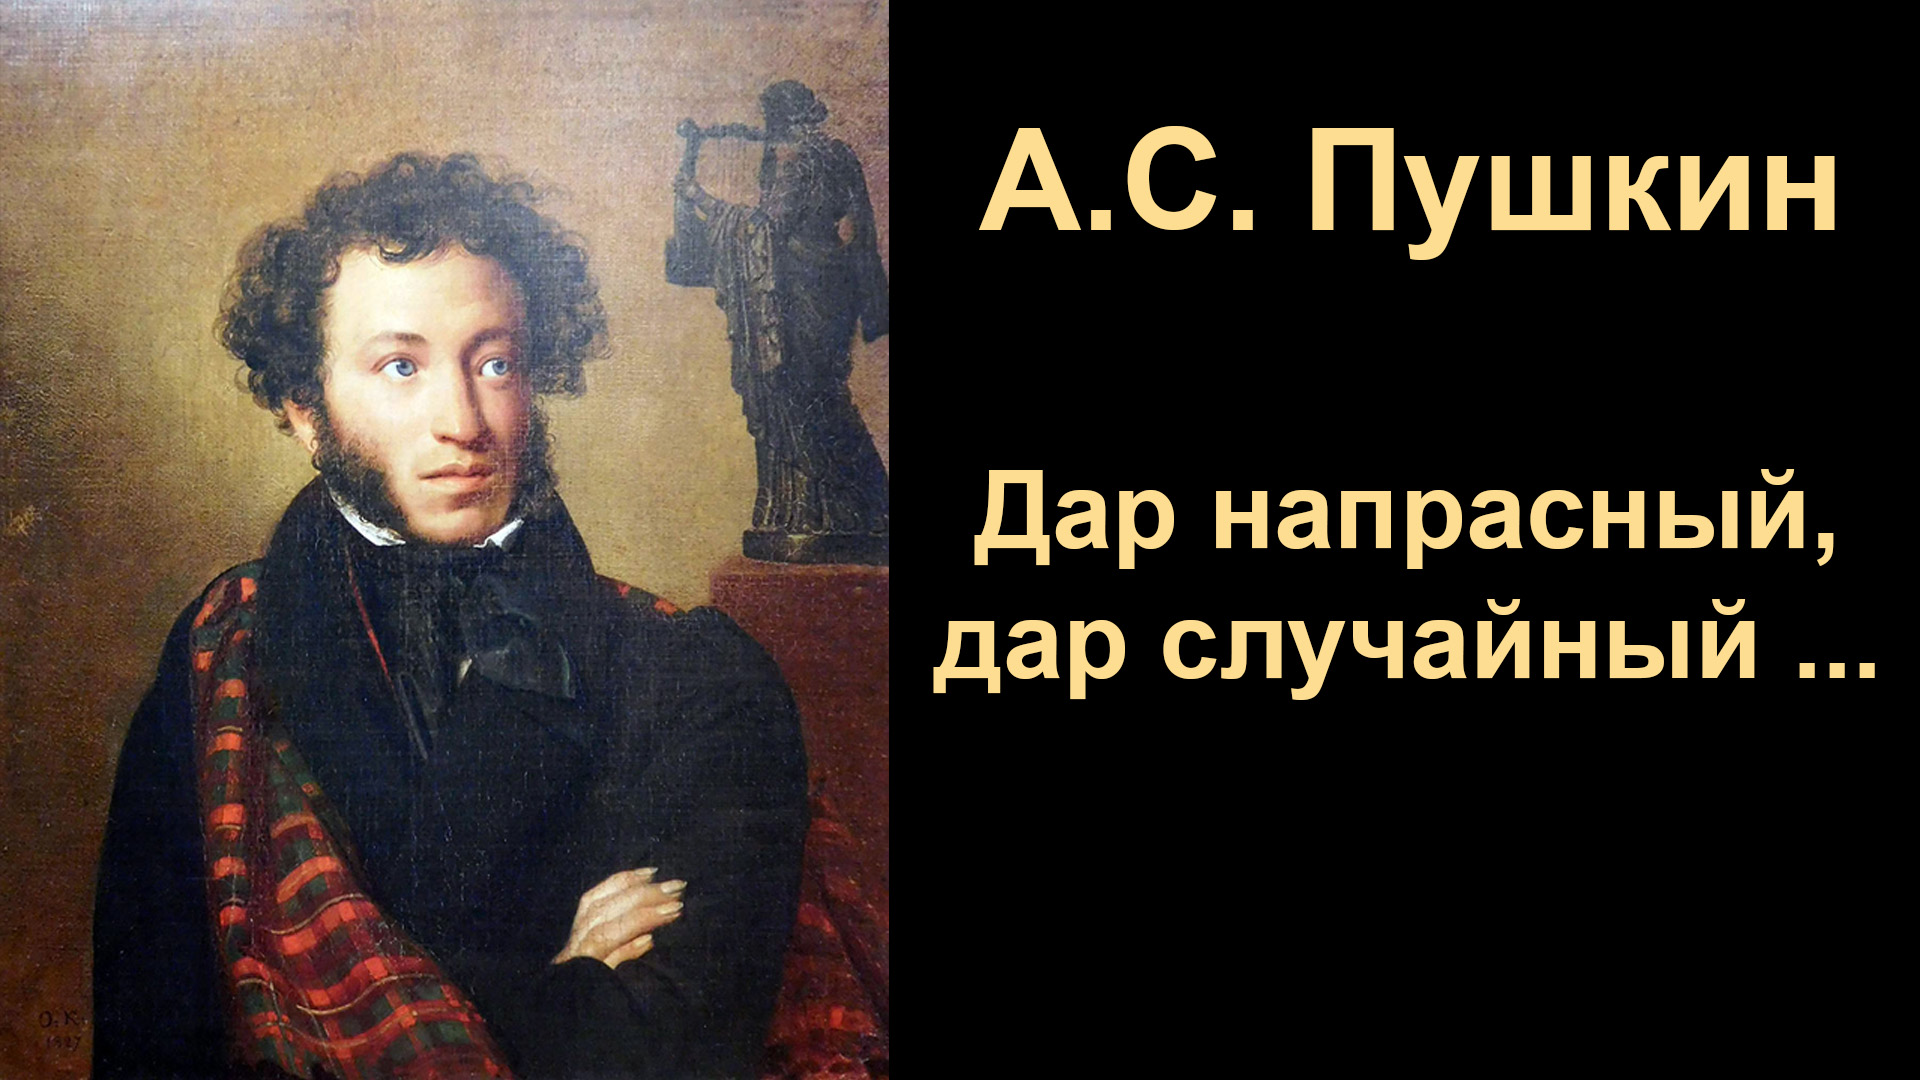 А.С.Пушкин,  Дар напрасный, дар случайный …  Читает А.Я.Кутепов